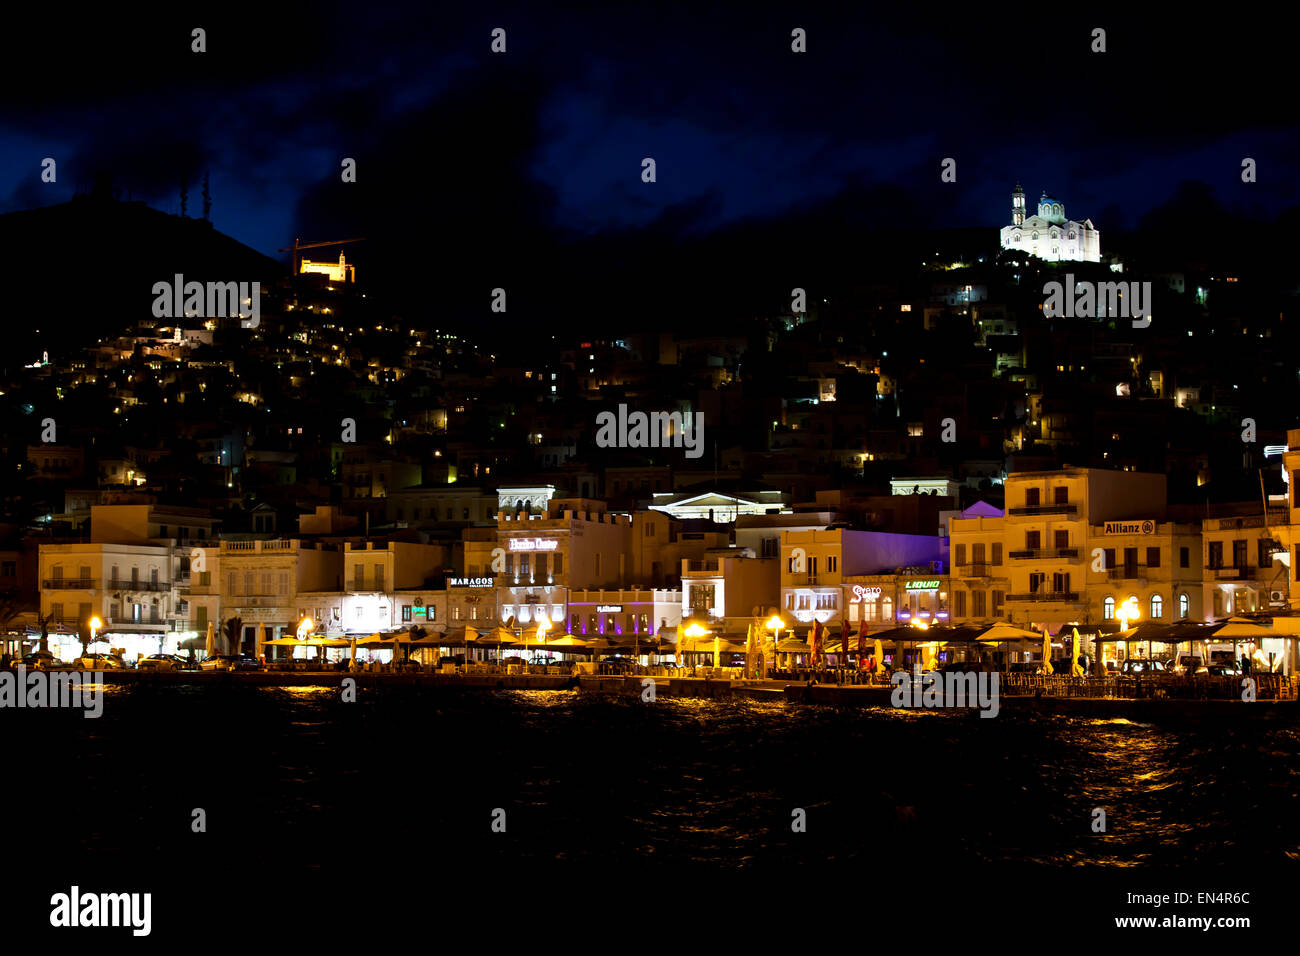 Eine nächtliche Szene des Hafens in Syros, griechische Inseln. Stockfoto